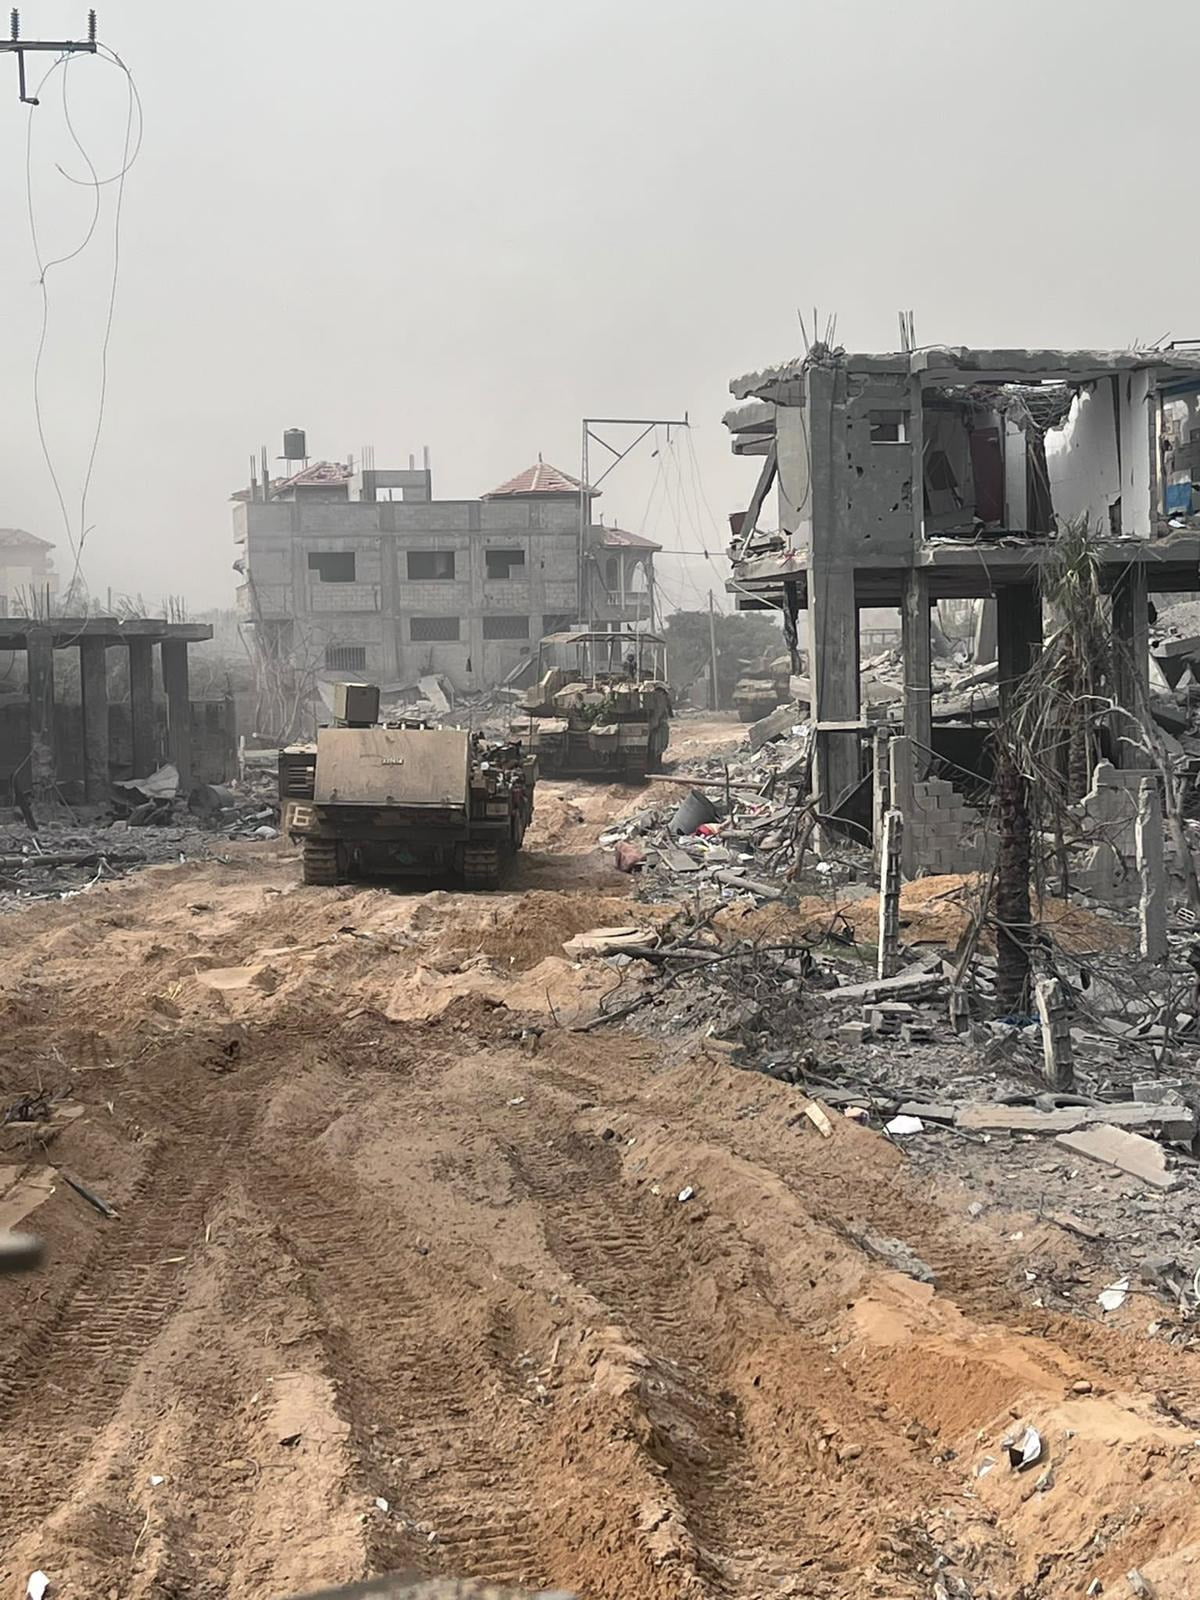 폭격으로 무너진 건물 잔해 사이로 진격하는 이스라엘 지상군 장갑차  /이스라엘 방위군 제공